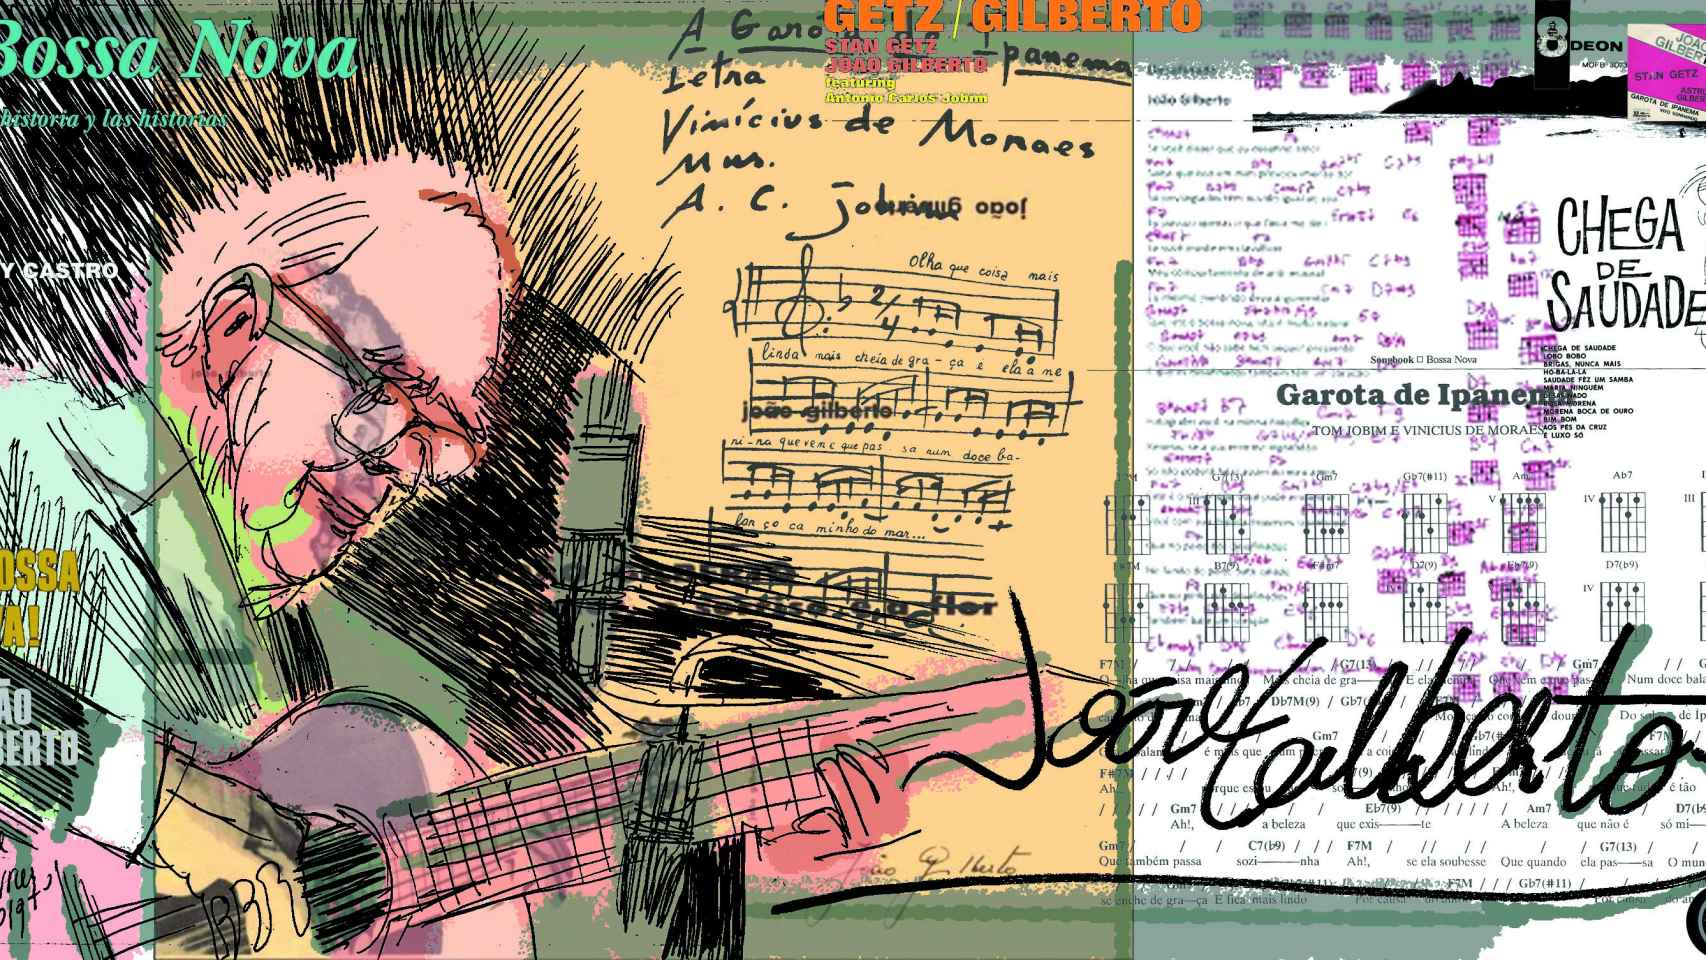 'Homenot' Joao Gilberto: melodía y misantropía / FARRUQO